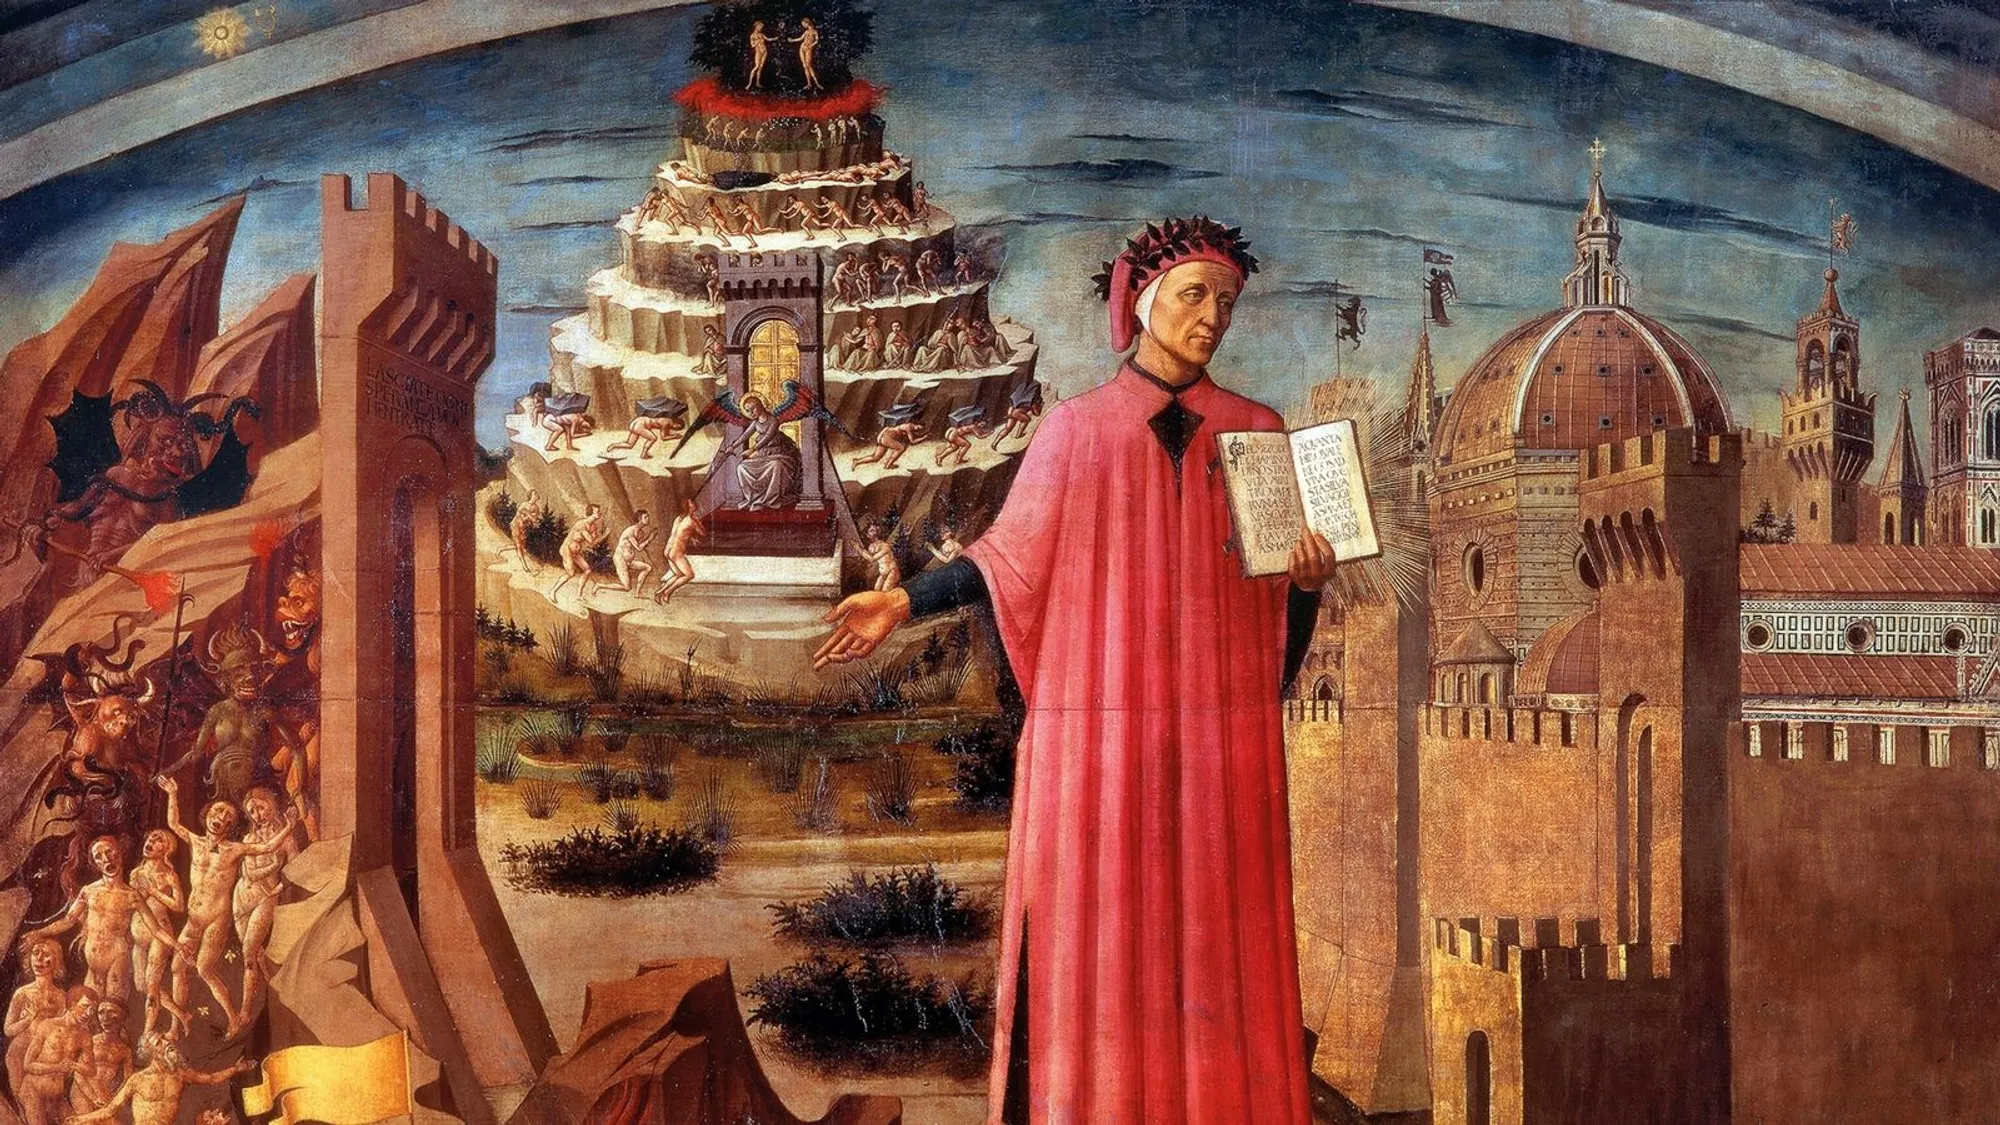 Domenico di Michelino's “La commedia illumina Firenze” on the wall of Florence Cathedral.